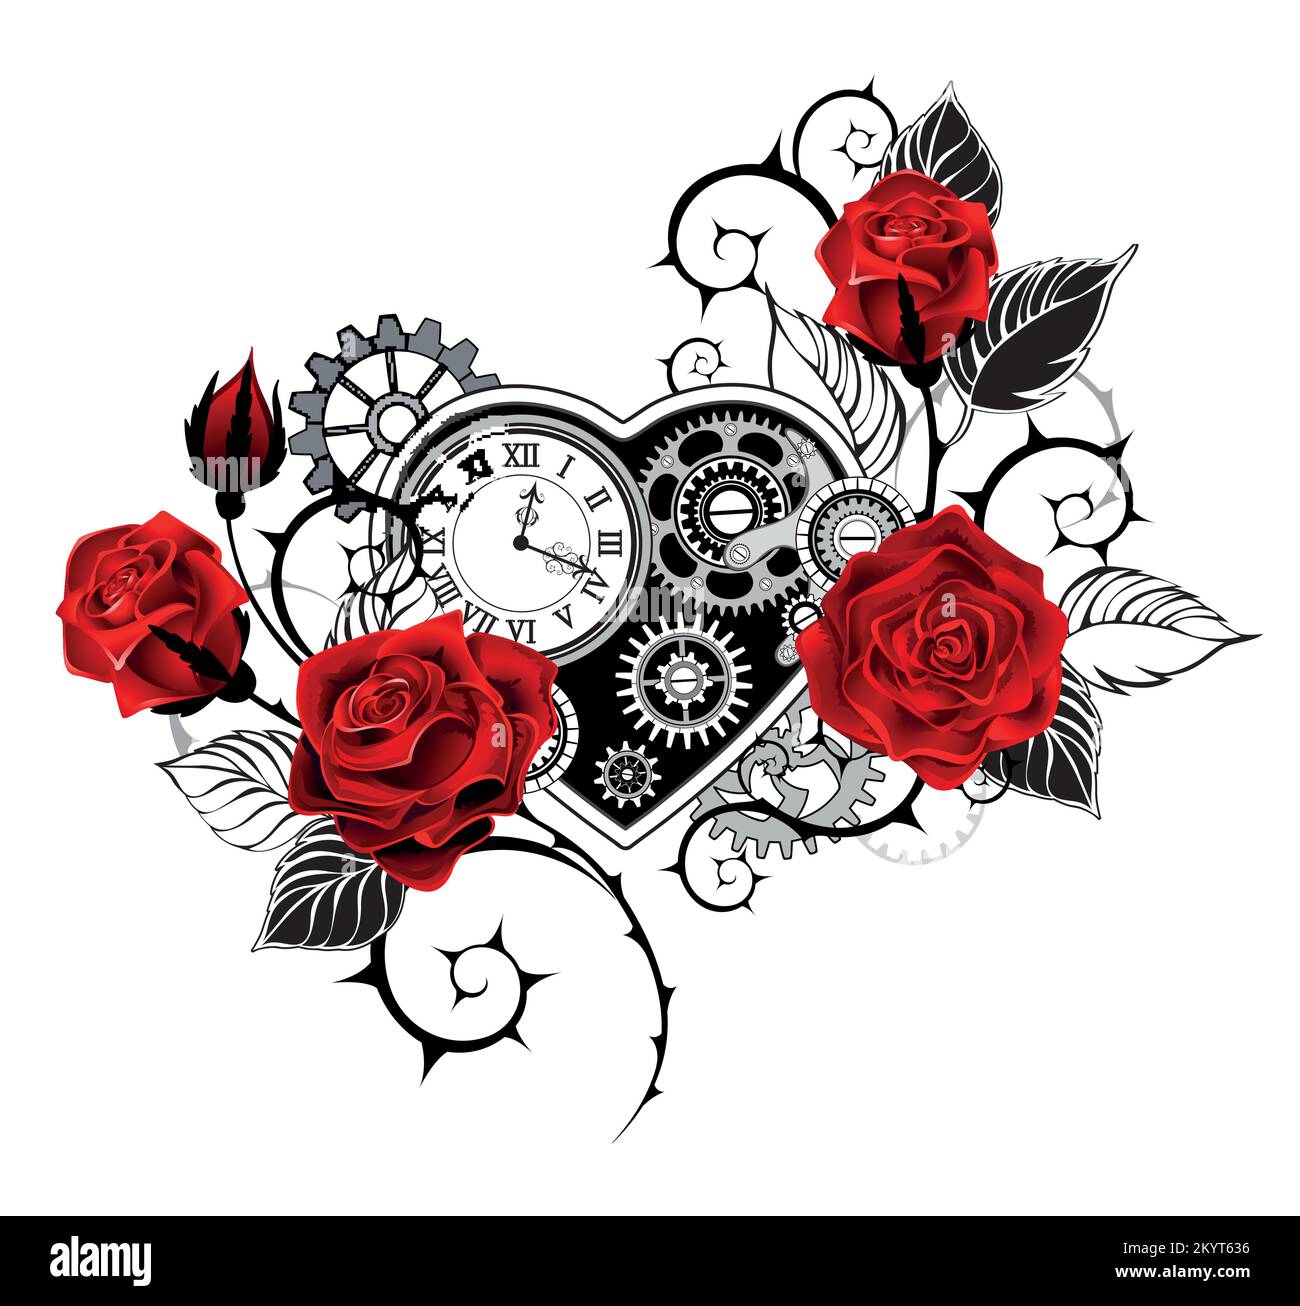 Coeur mécanique dessiné par des artisans avec une horloge antique, décoré de roses rouges avec des tiges noires et piquantes sur fond blanc. Style steampunk. Illustration de Vecteur